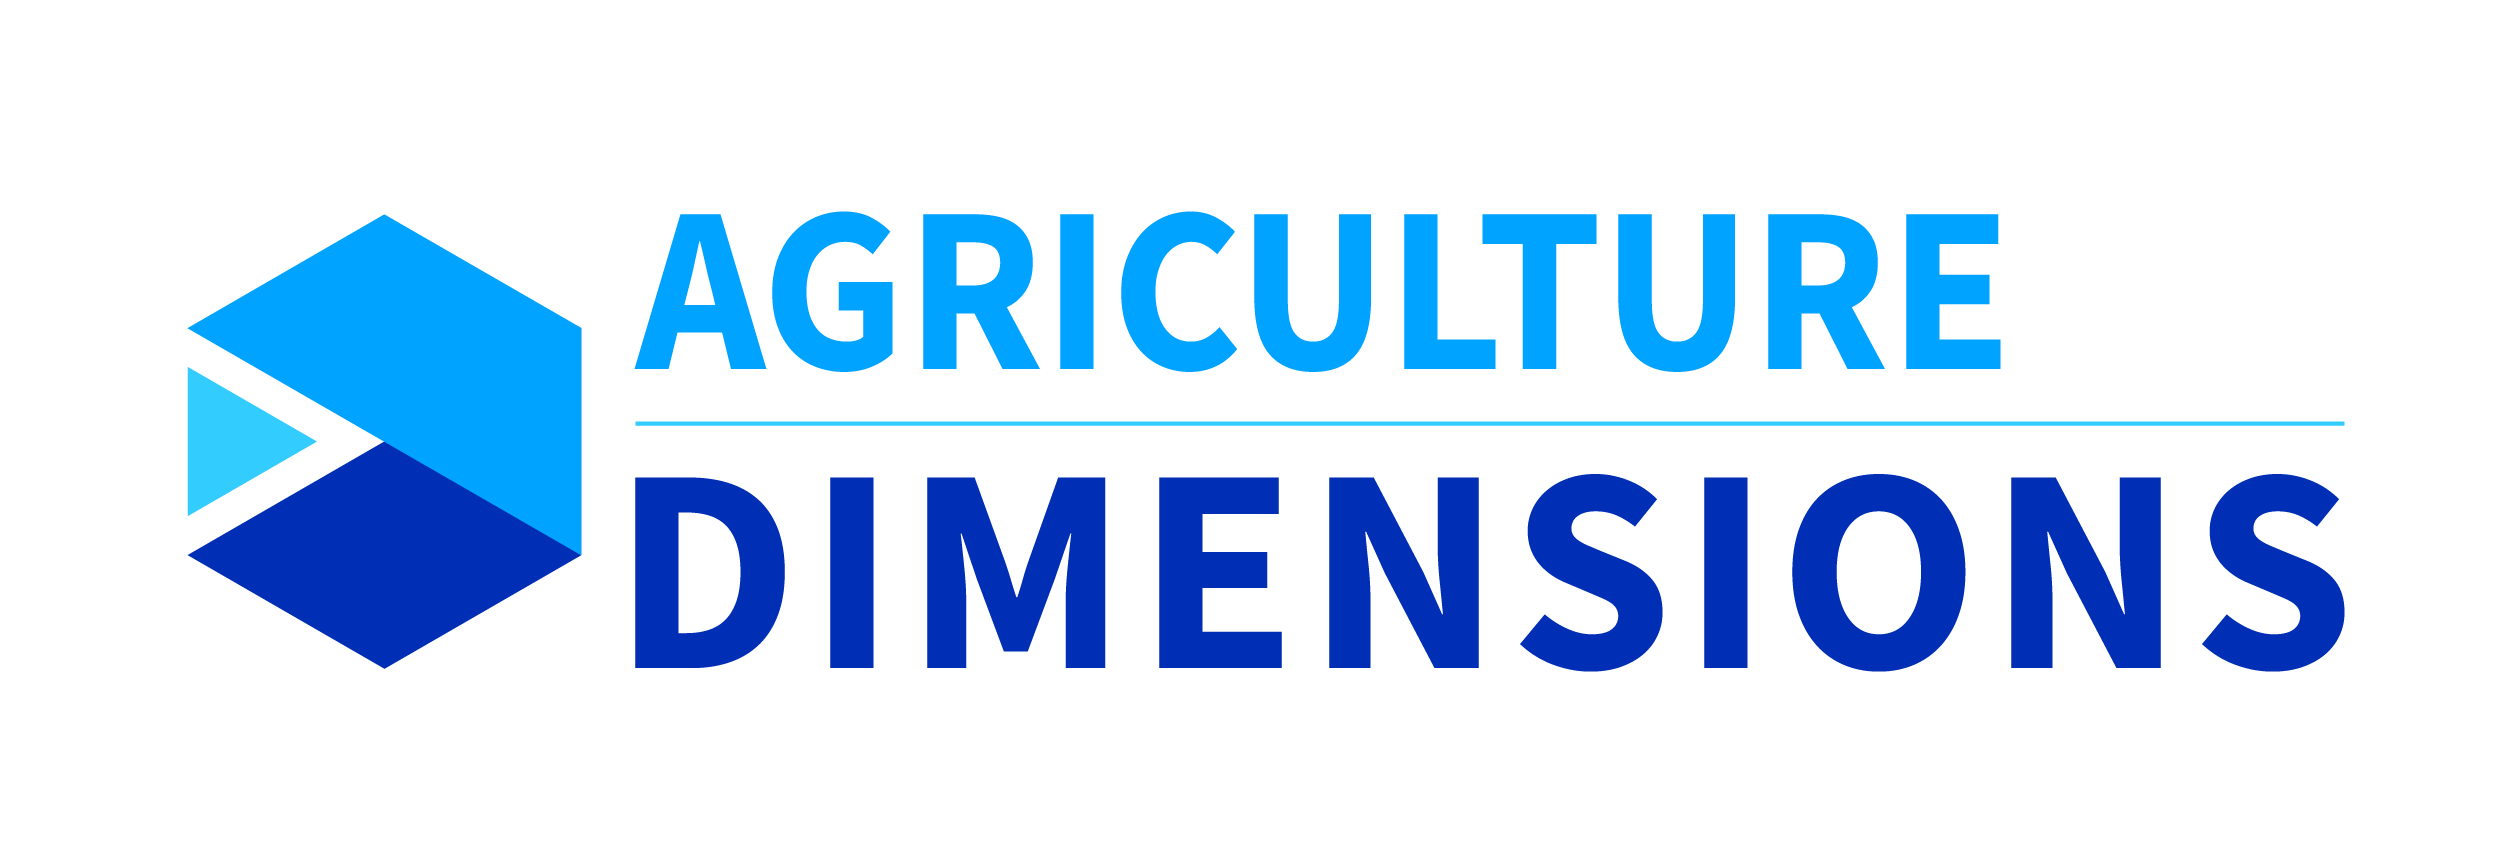 Acceltech Pte Ltd - Agriculture Dimensions